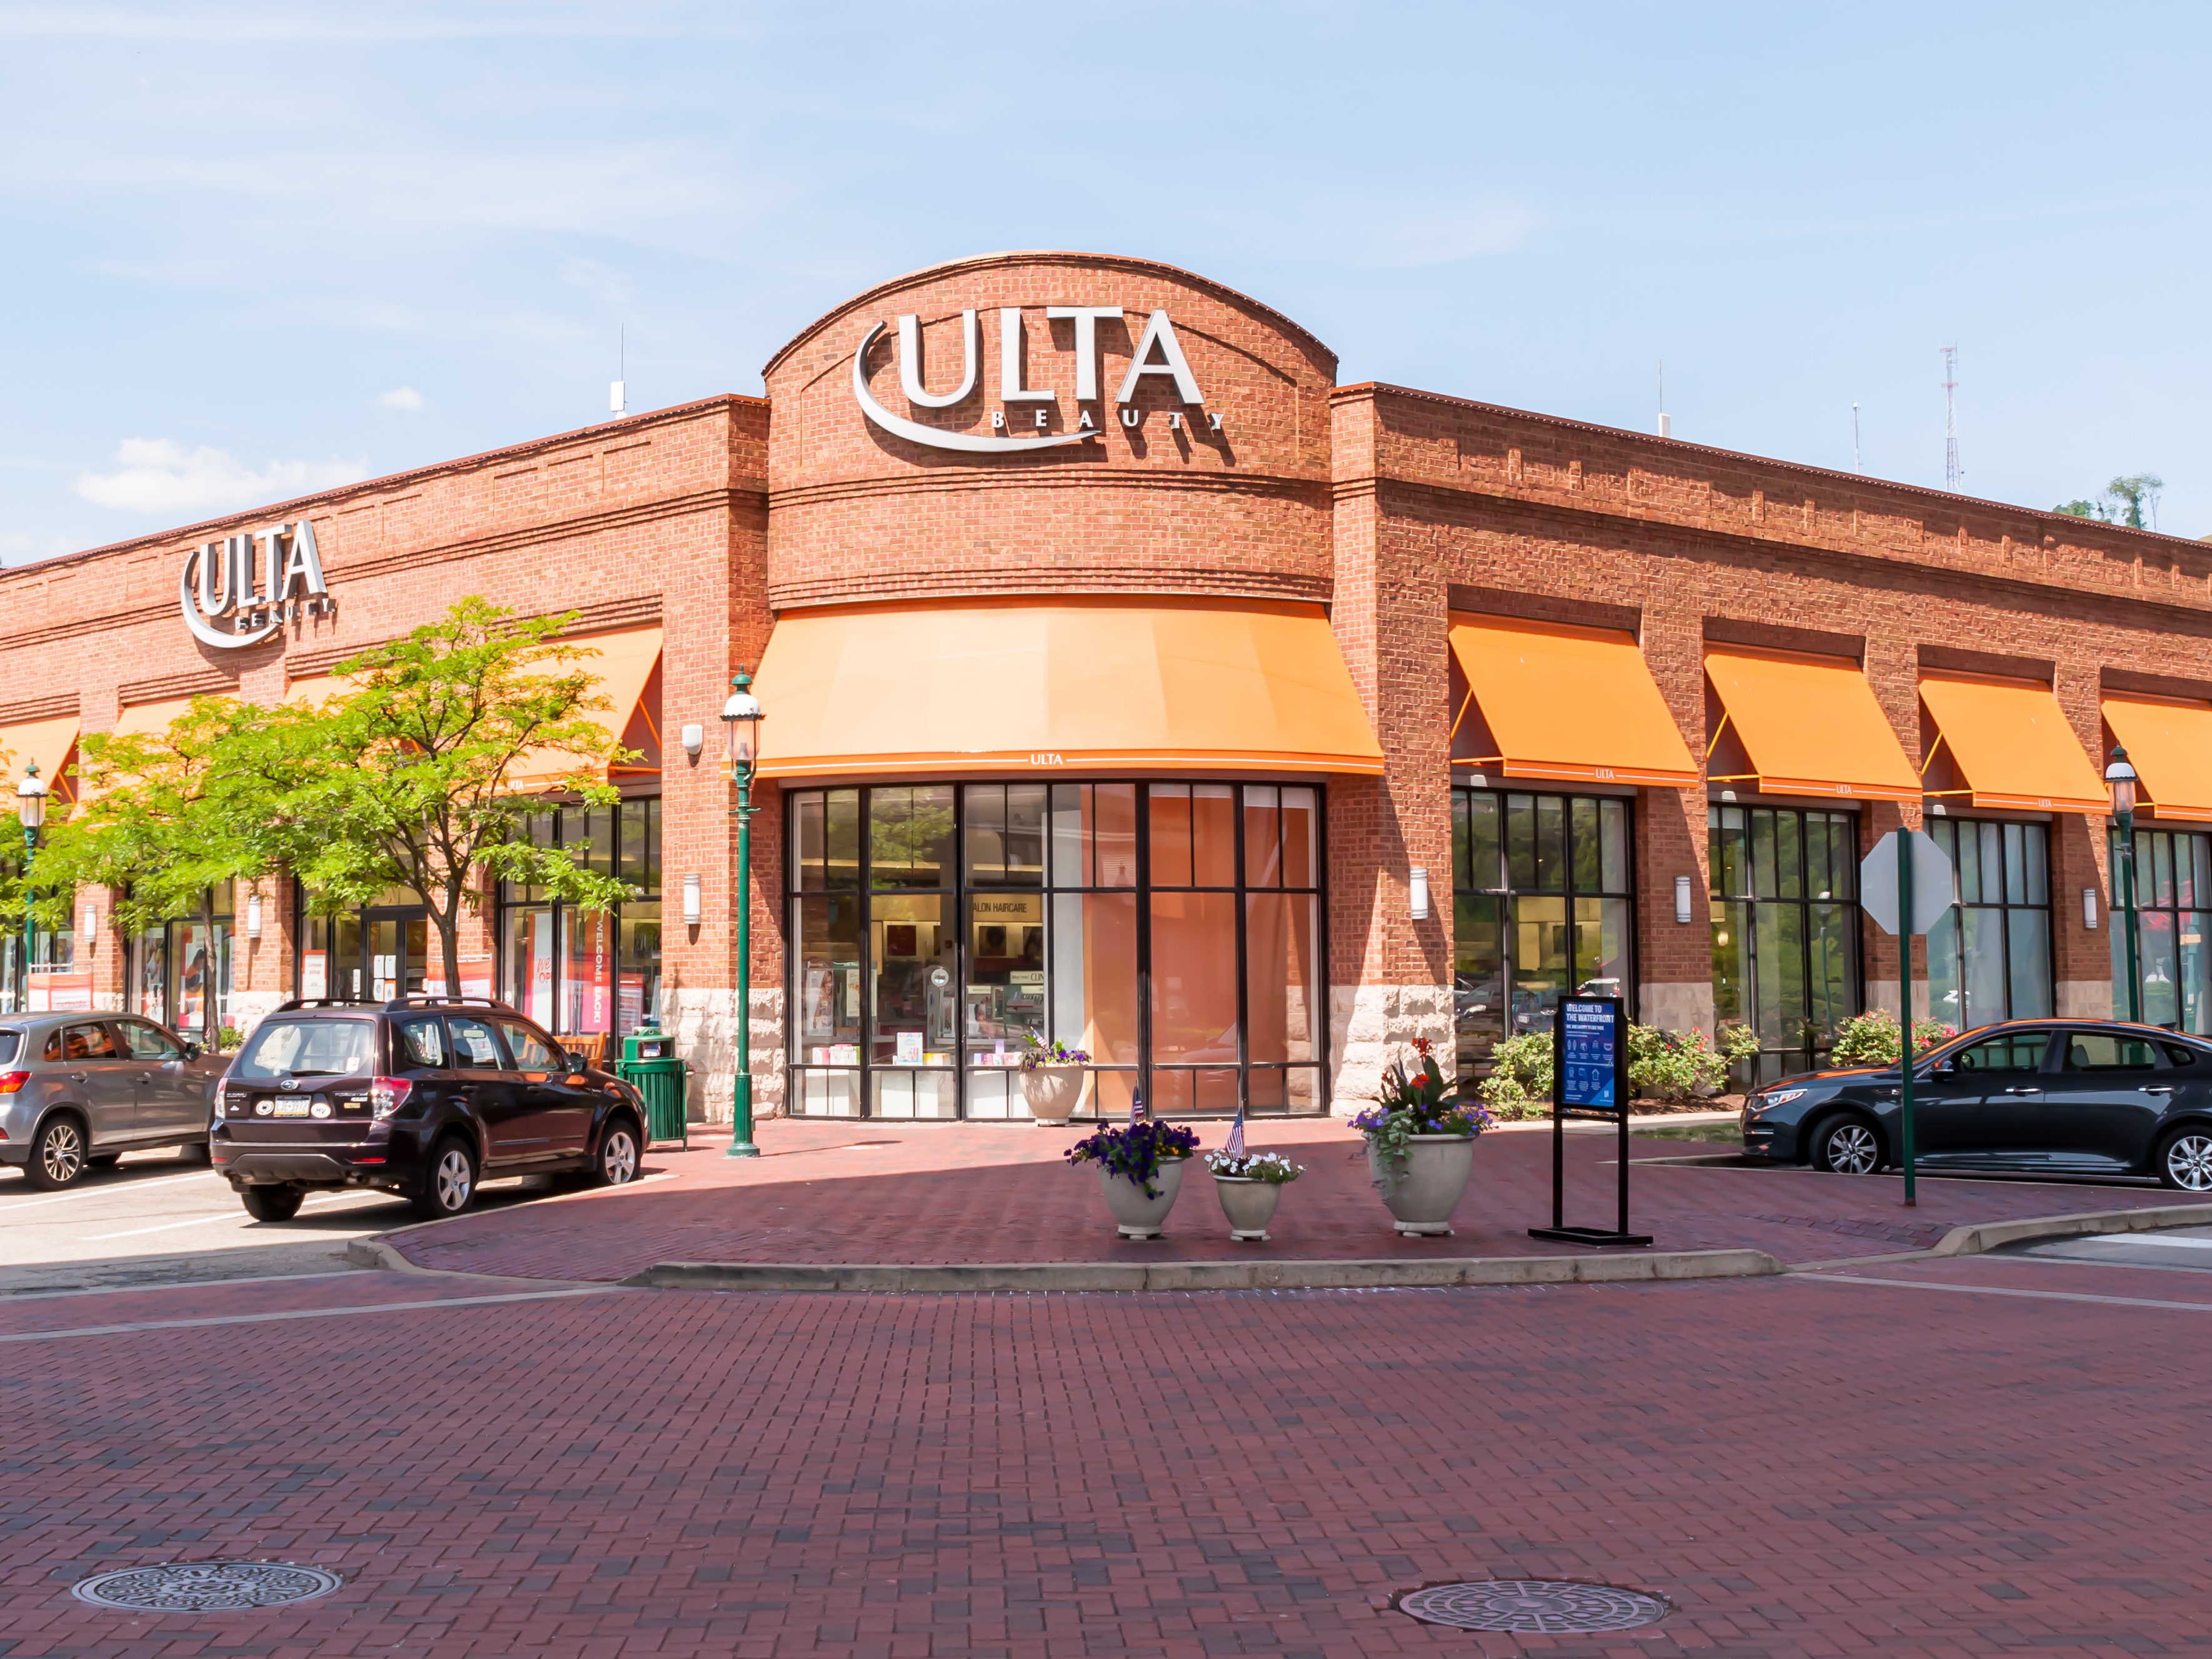 Ulta: The Gold Standard For Retail (NASDAQ:ULTA)